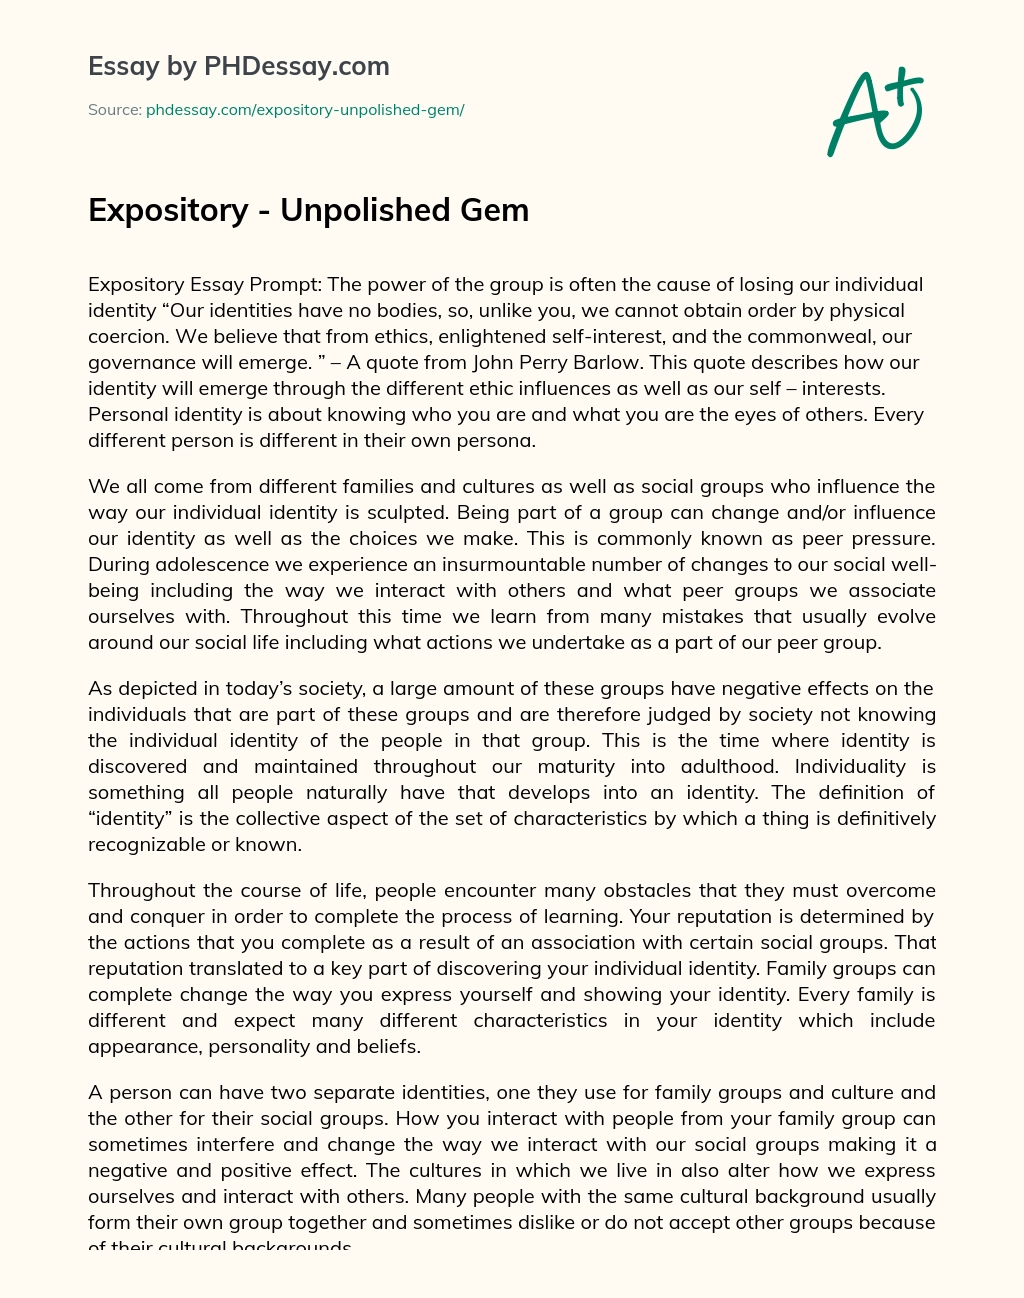 Expository – Unpolished Gem essay